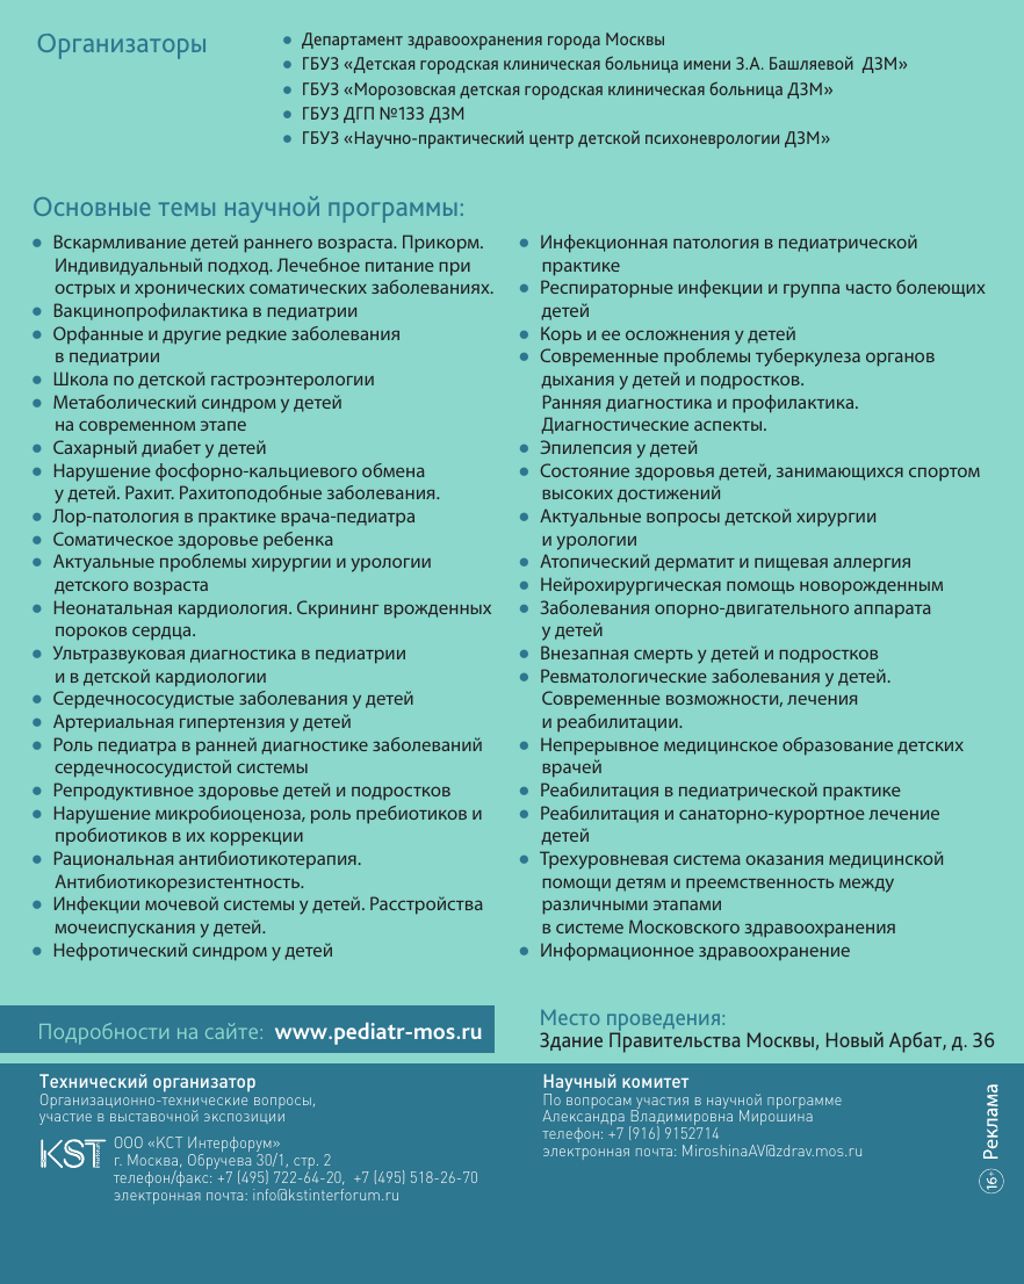 Приглашаем принять участие в V Московском городском съезде педиатров "Трудный диагноз" в педиатрии.